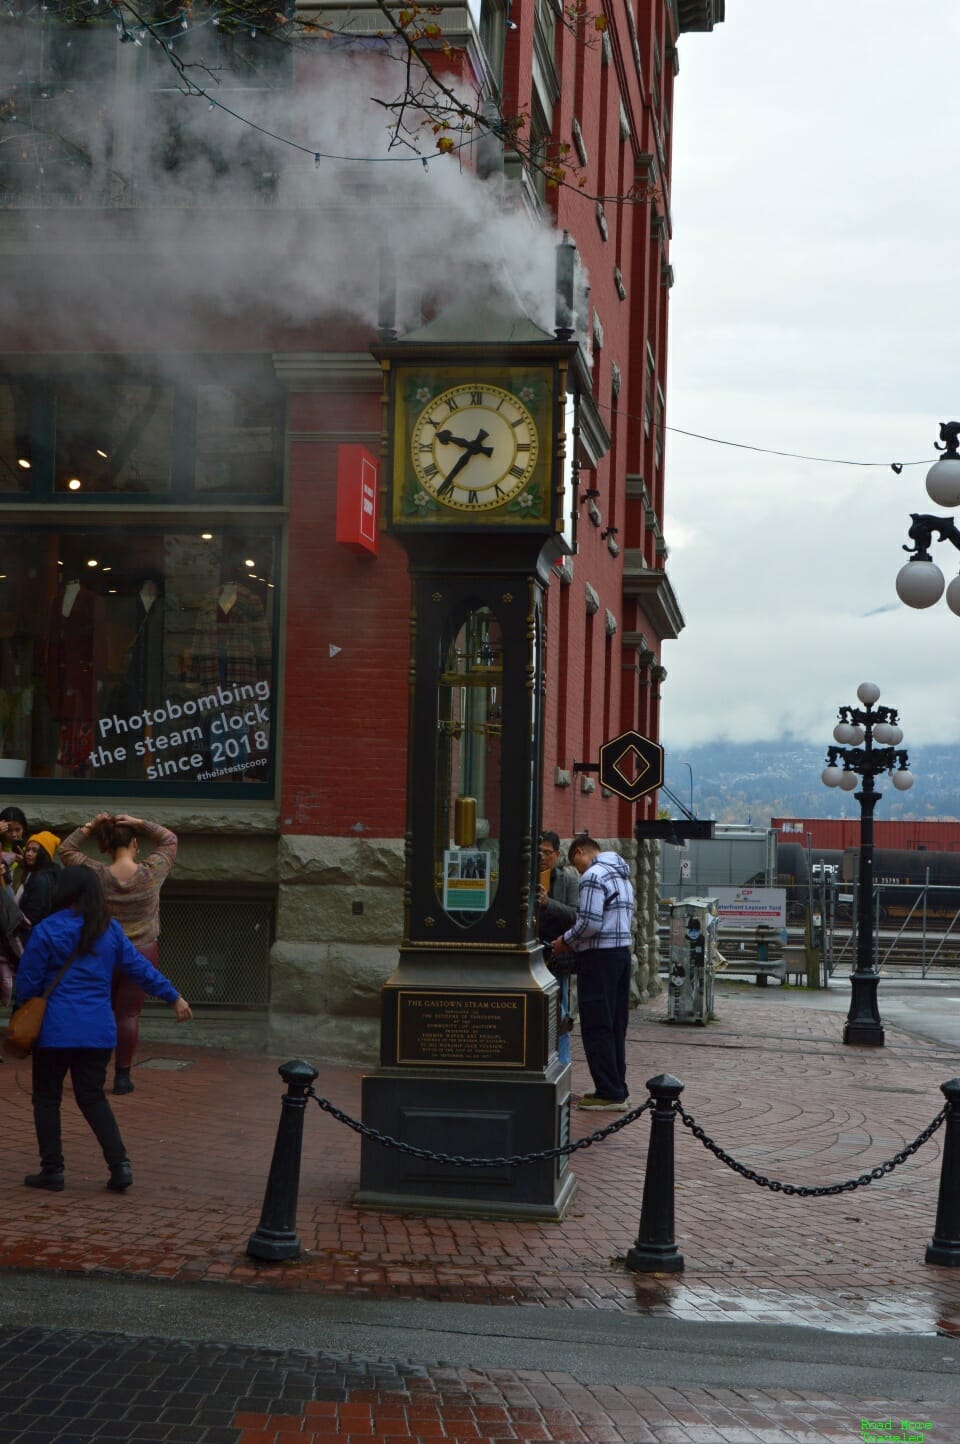 Gastown Steam Clock photobomb